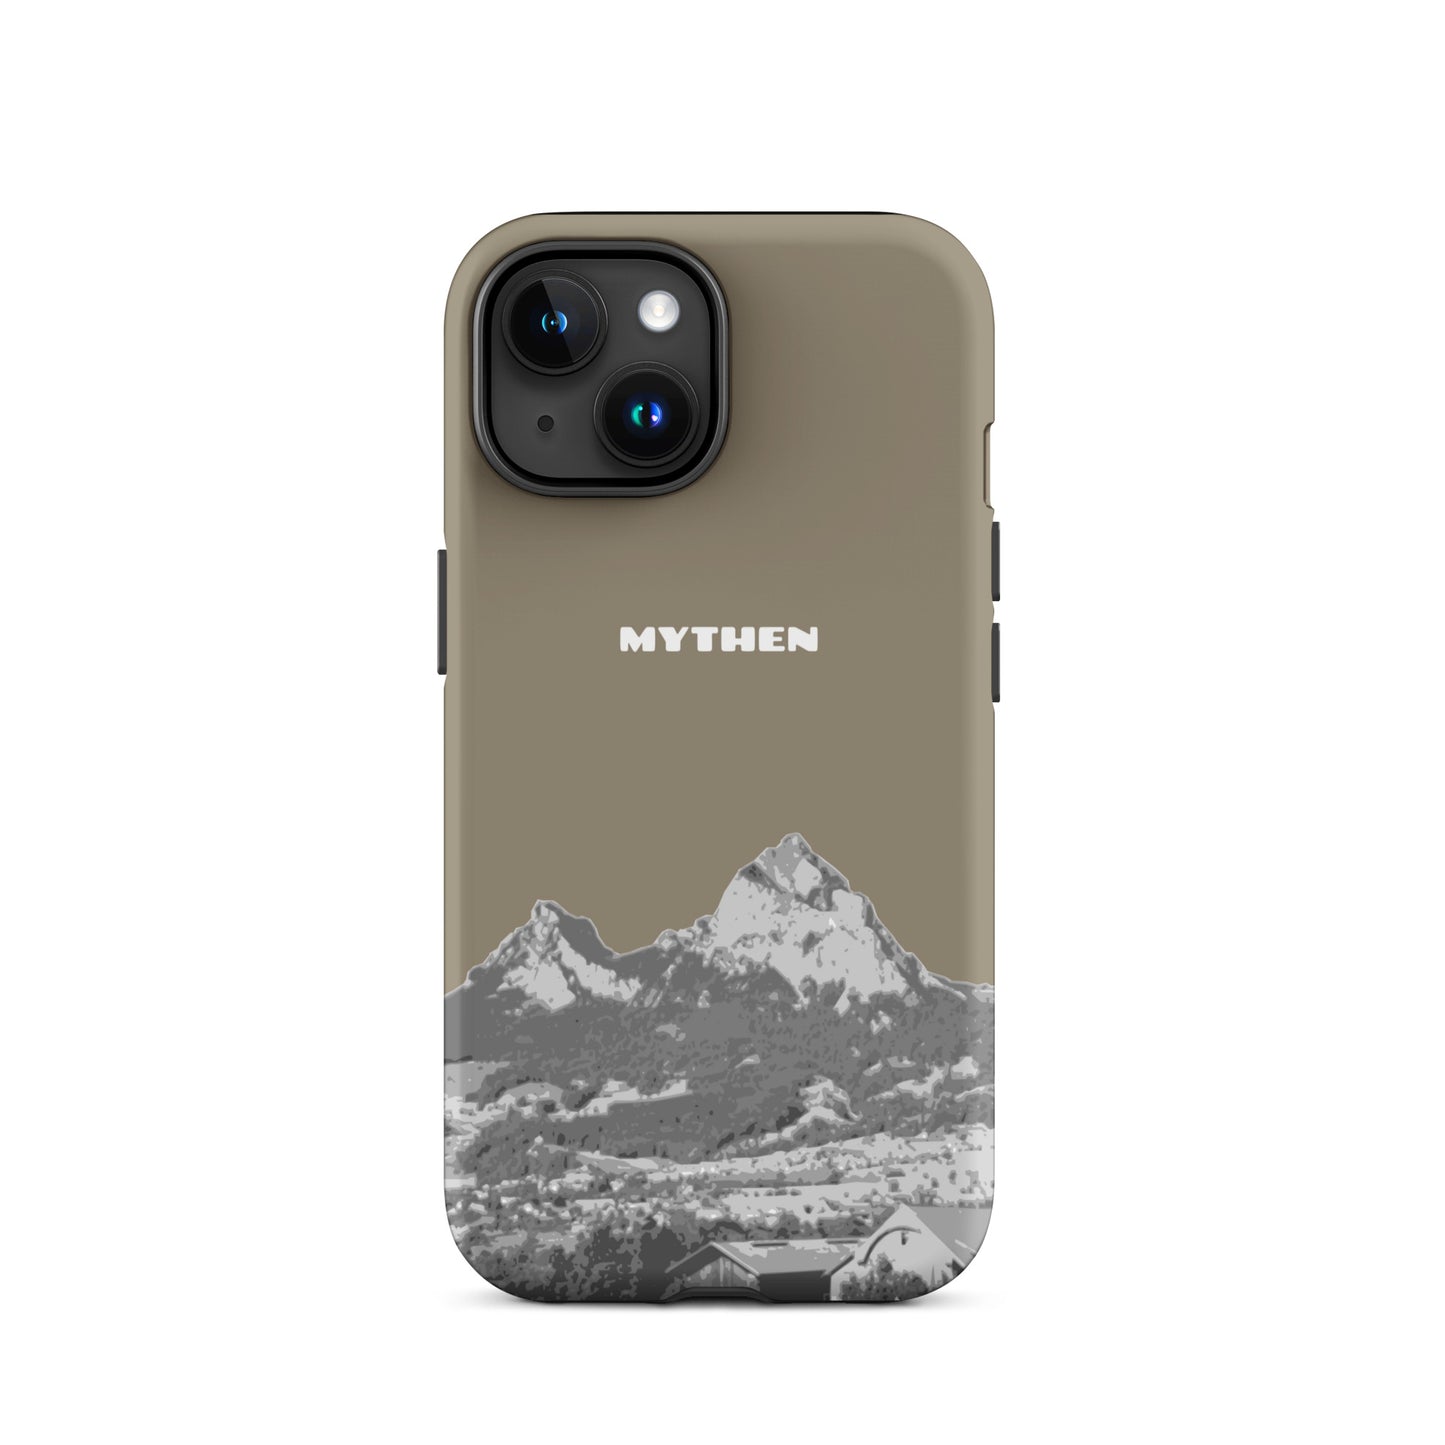 Hülle für das iPhone 15 von Apple in der Farbe Graubraun, dass den Grossen Mythen und den Kleinen Mythen bei Schwyz zeigt. 